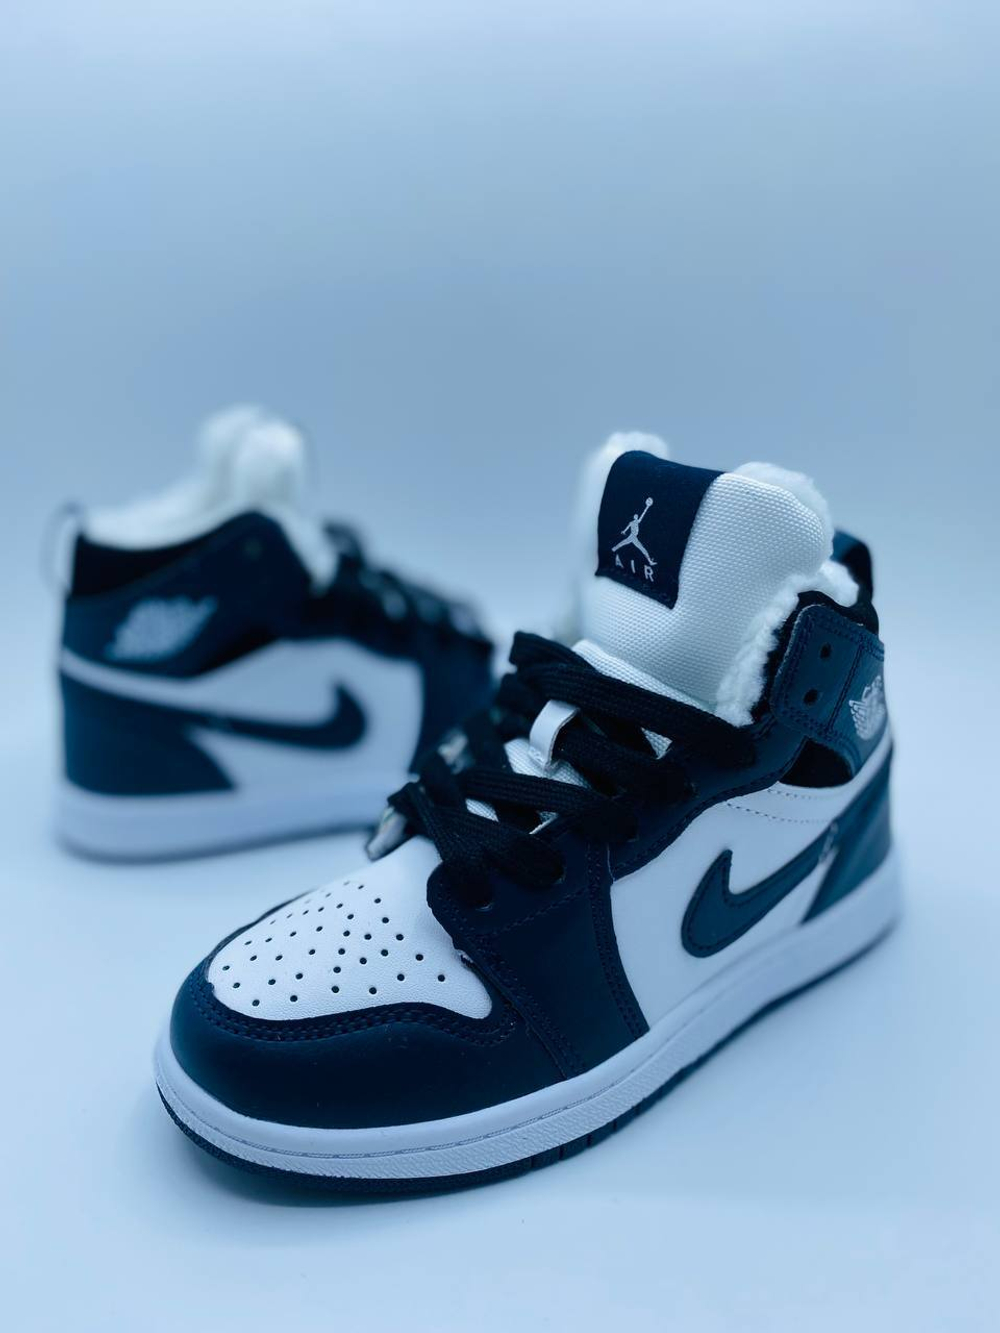 Кроссовки для детей Nike Air Jordan с мехом